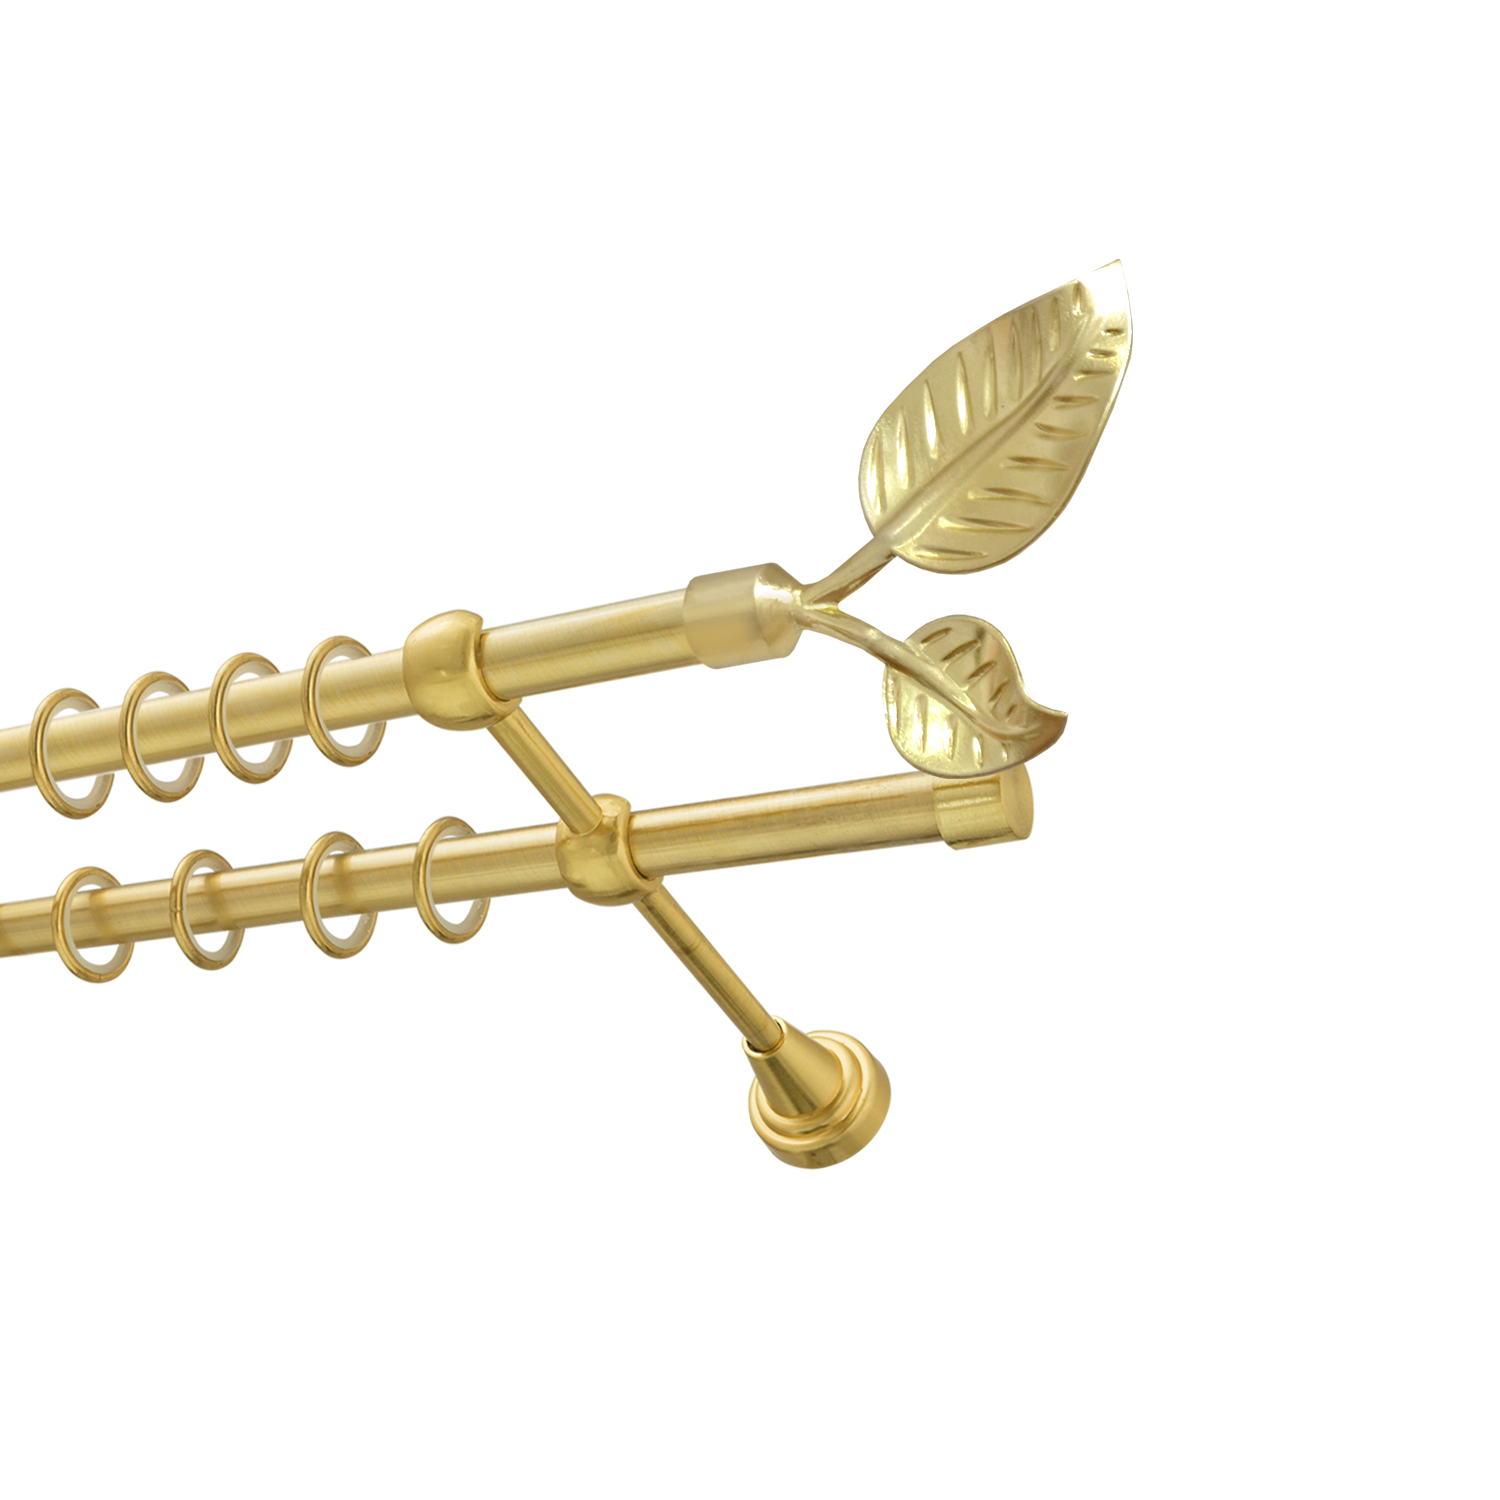 Металлический карниз для штор Тропик, двухрядный 16/16 мм, золото, гладкая штанга, длина 240 см - фото Wikidecor.ru